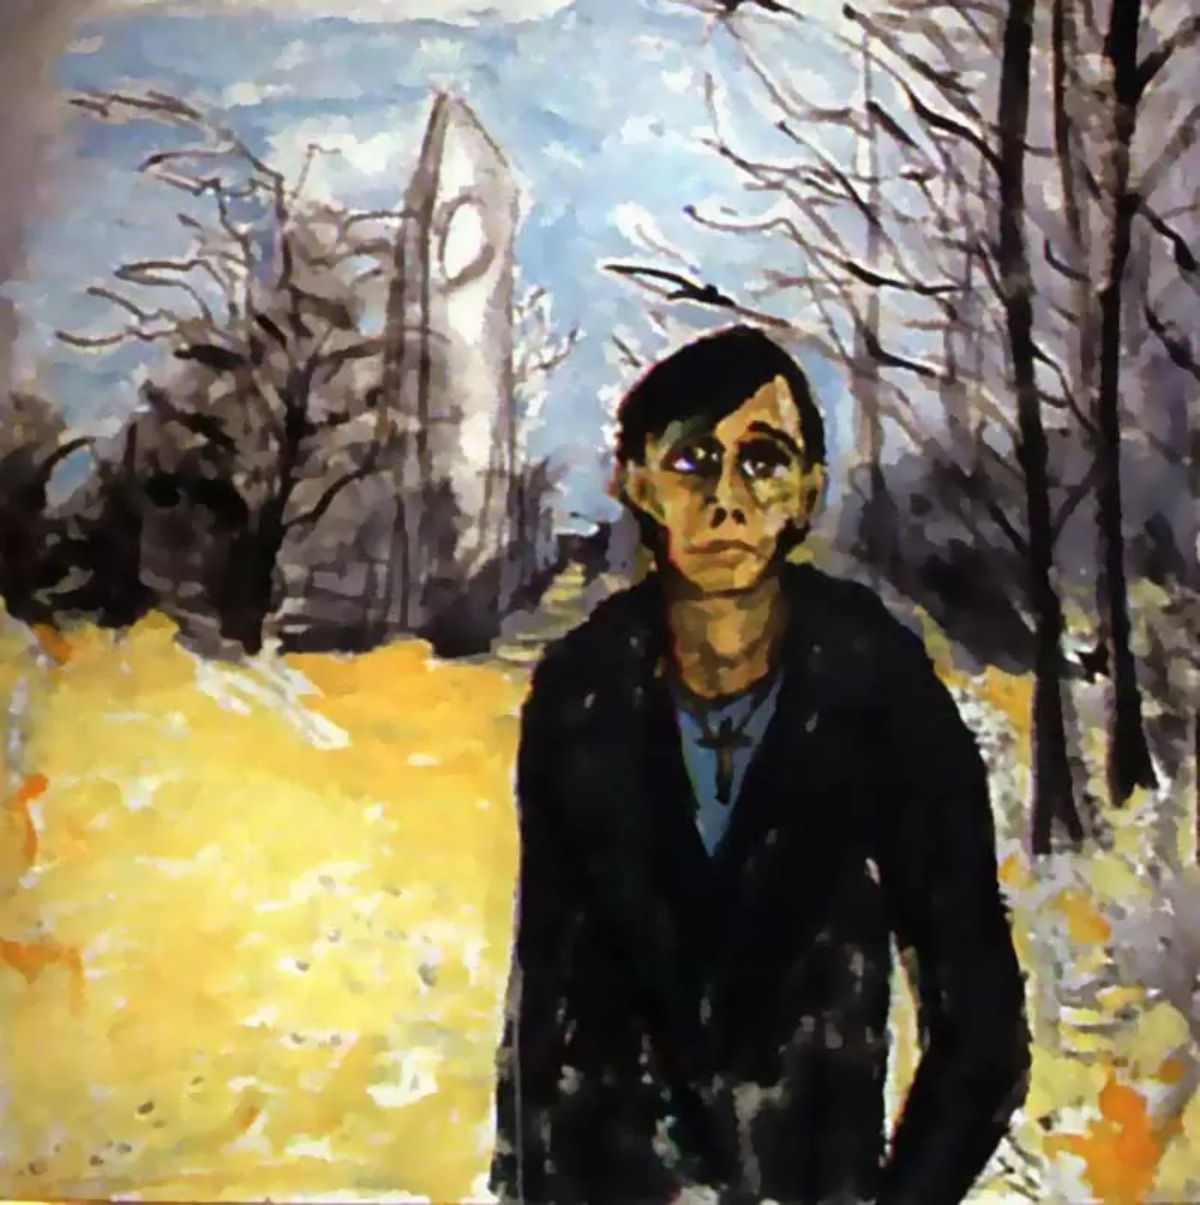 "Berlin Landscape with Joe," a portrait of Iggy Pop by David Bowie